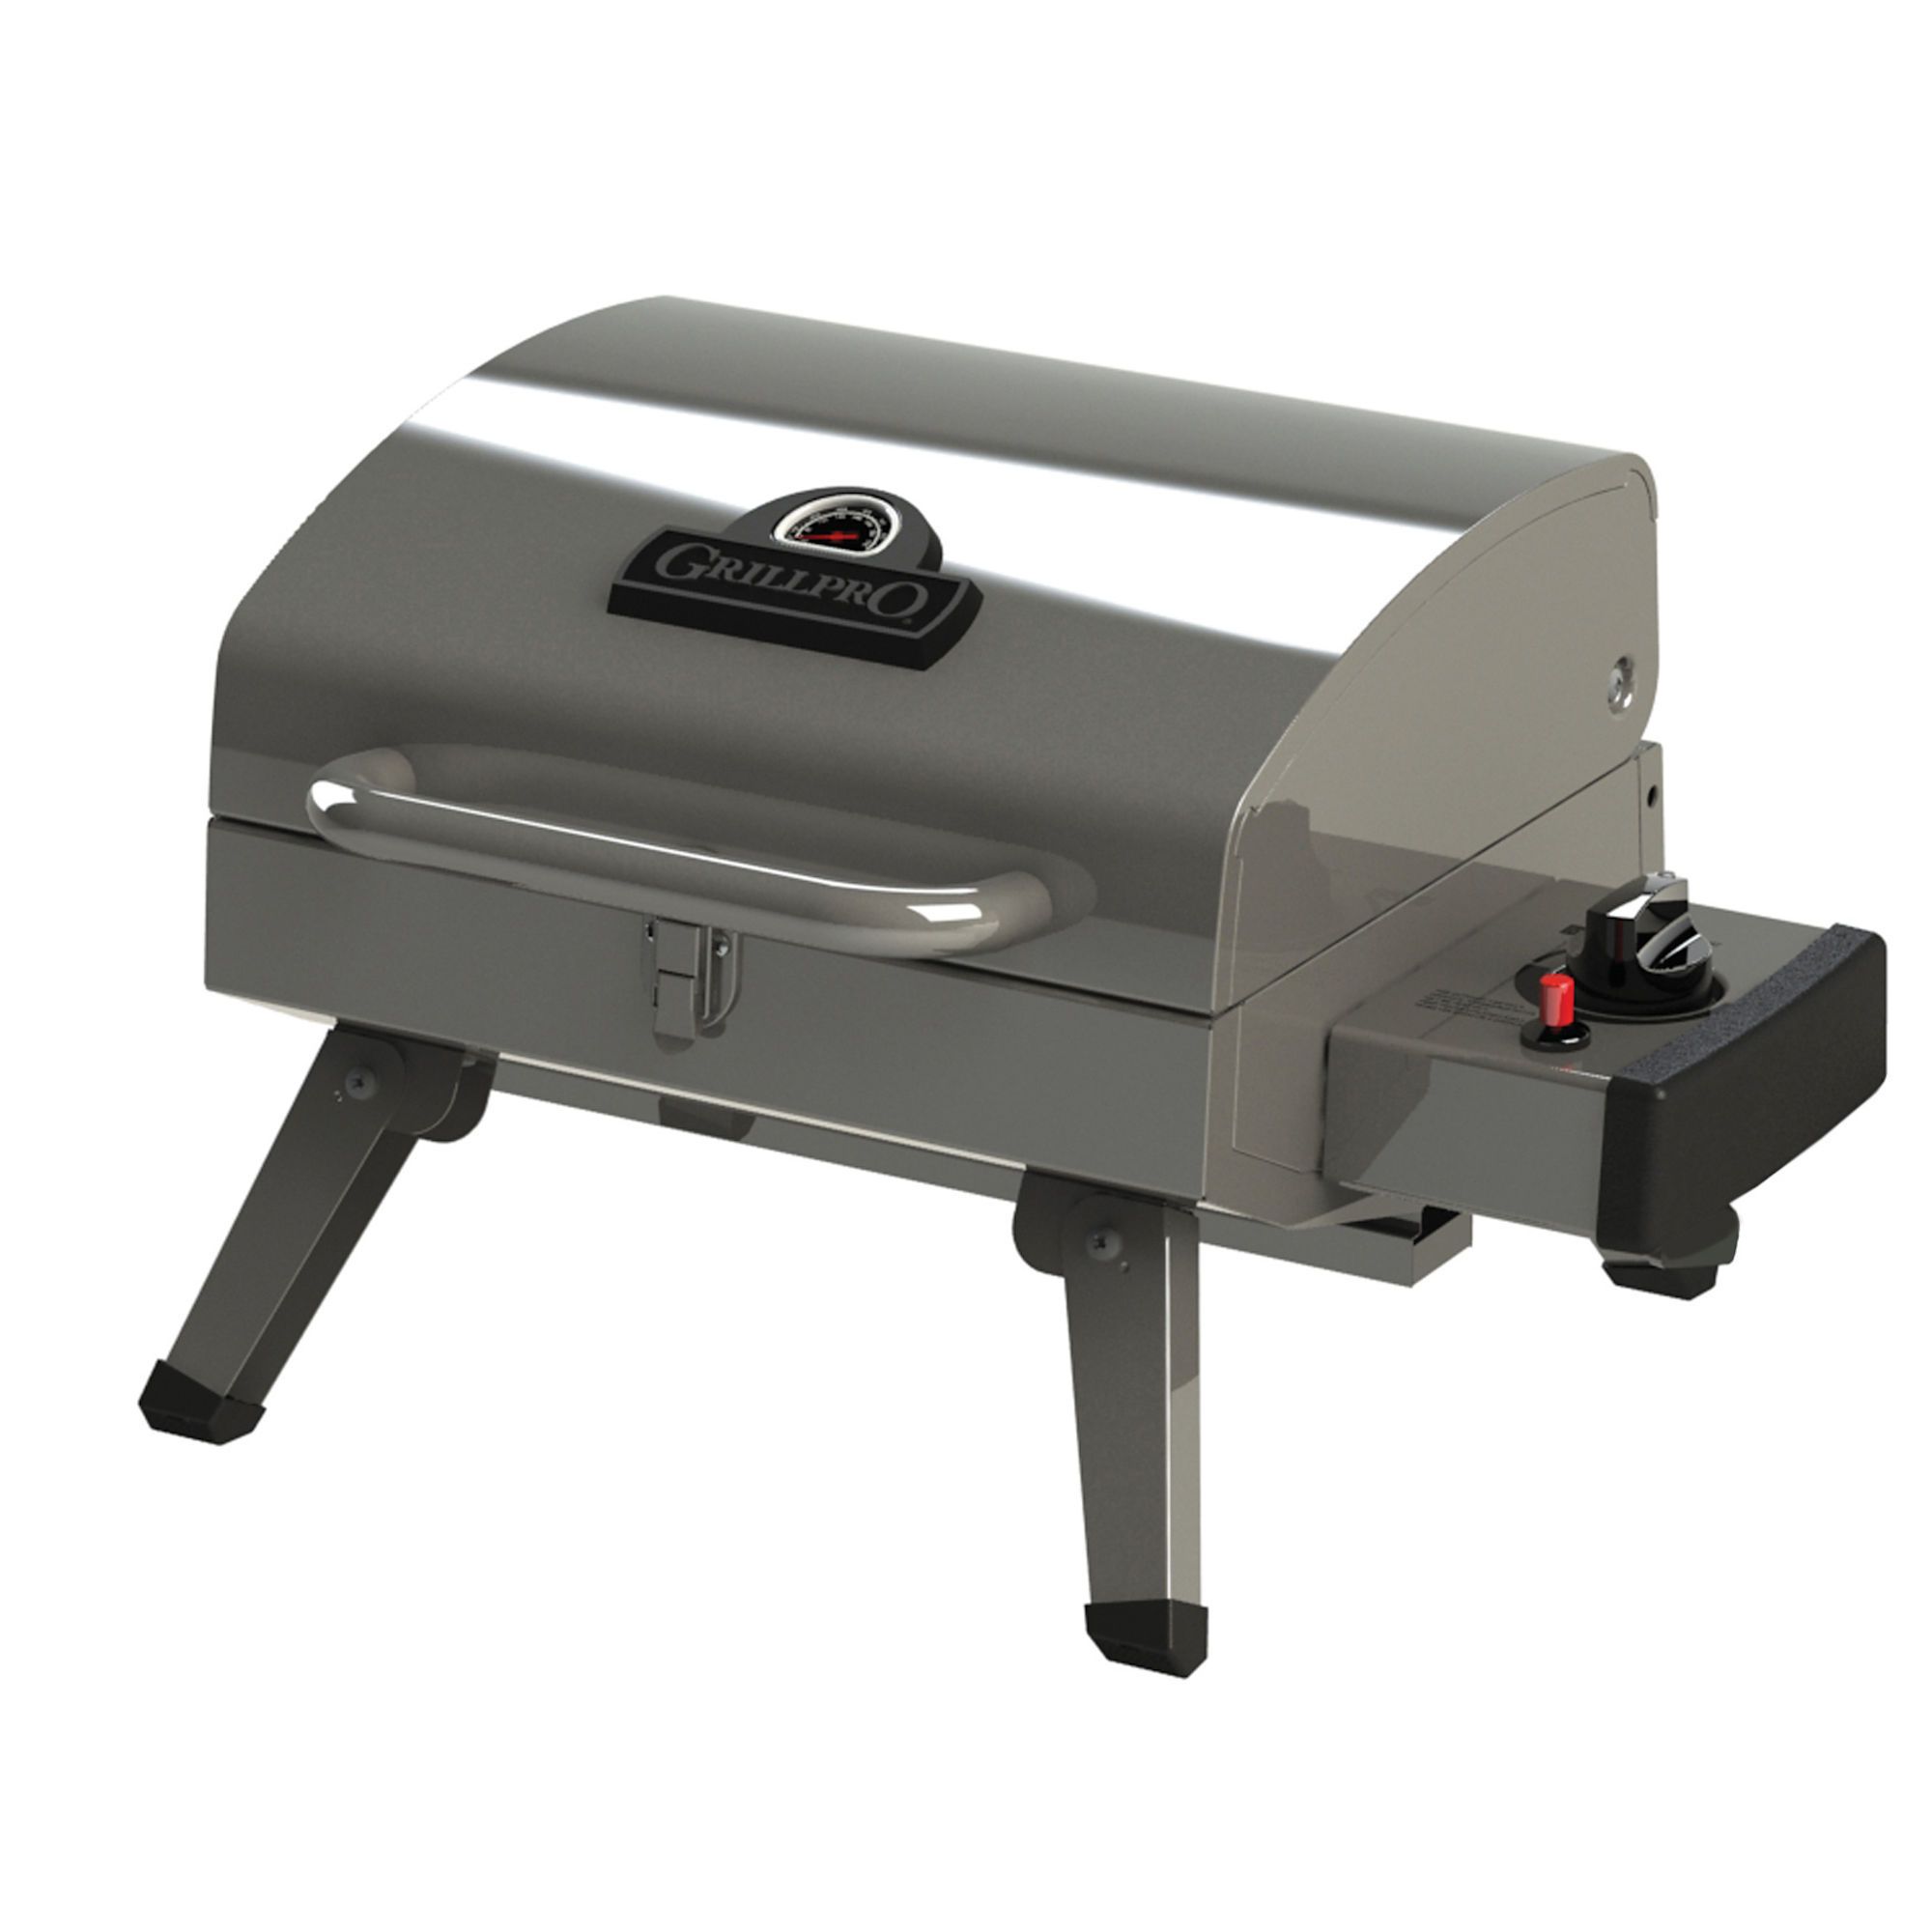 Souffleur de grill - ventilateur de barbecue électrique portable